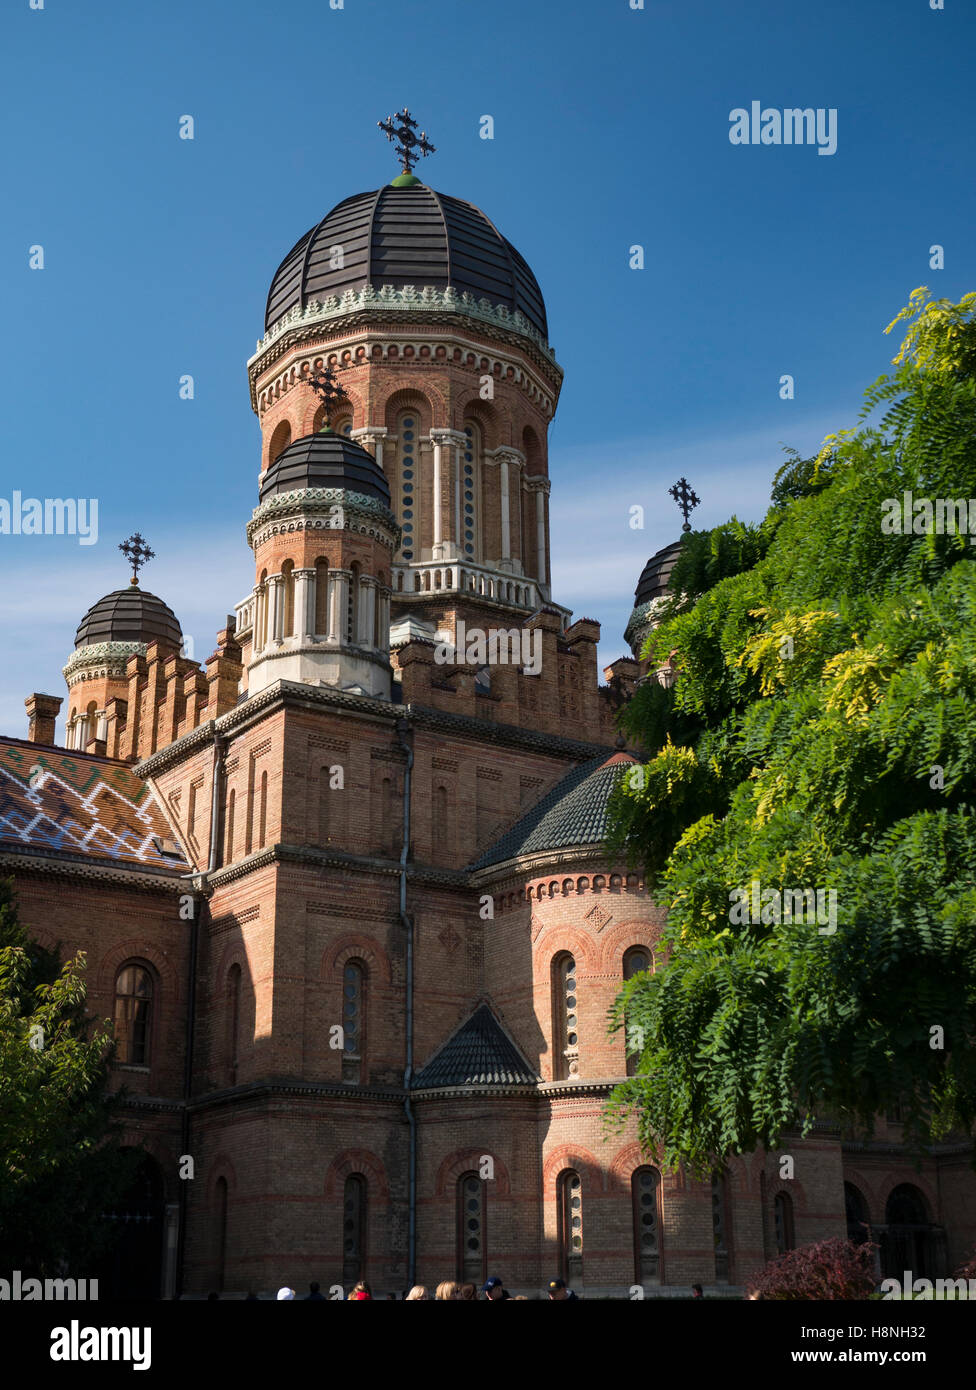 La torre a forma di cupola di chernivtsi National University in chernivtsi ucraina con alberi autunnali Foto Stock